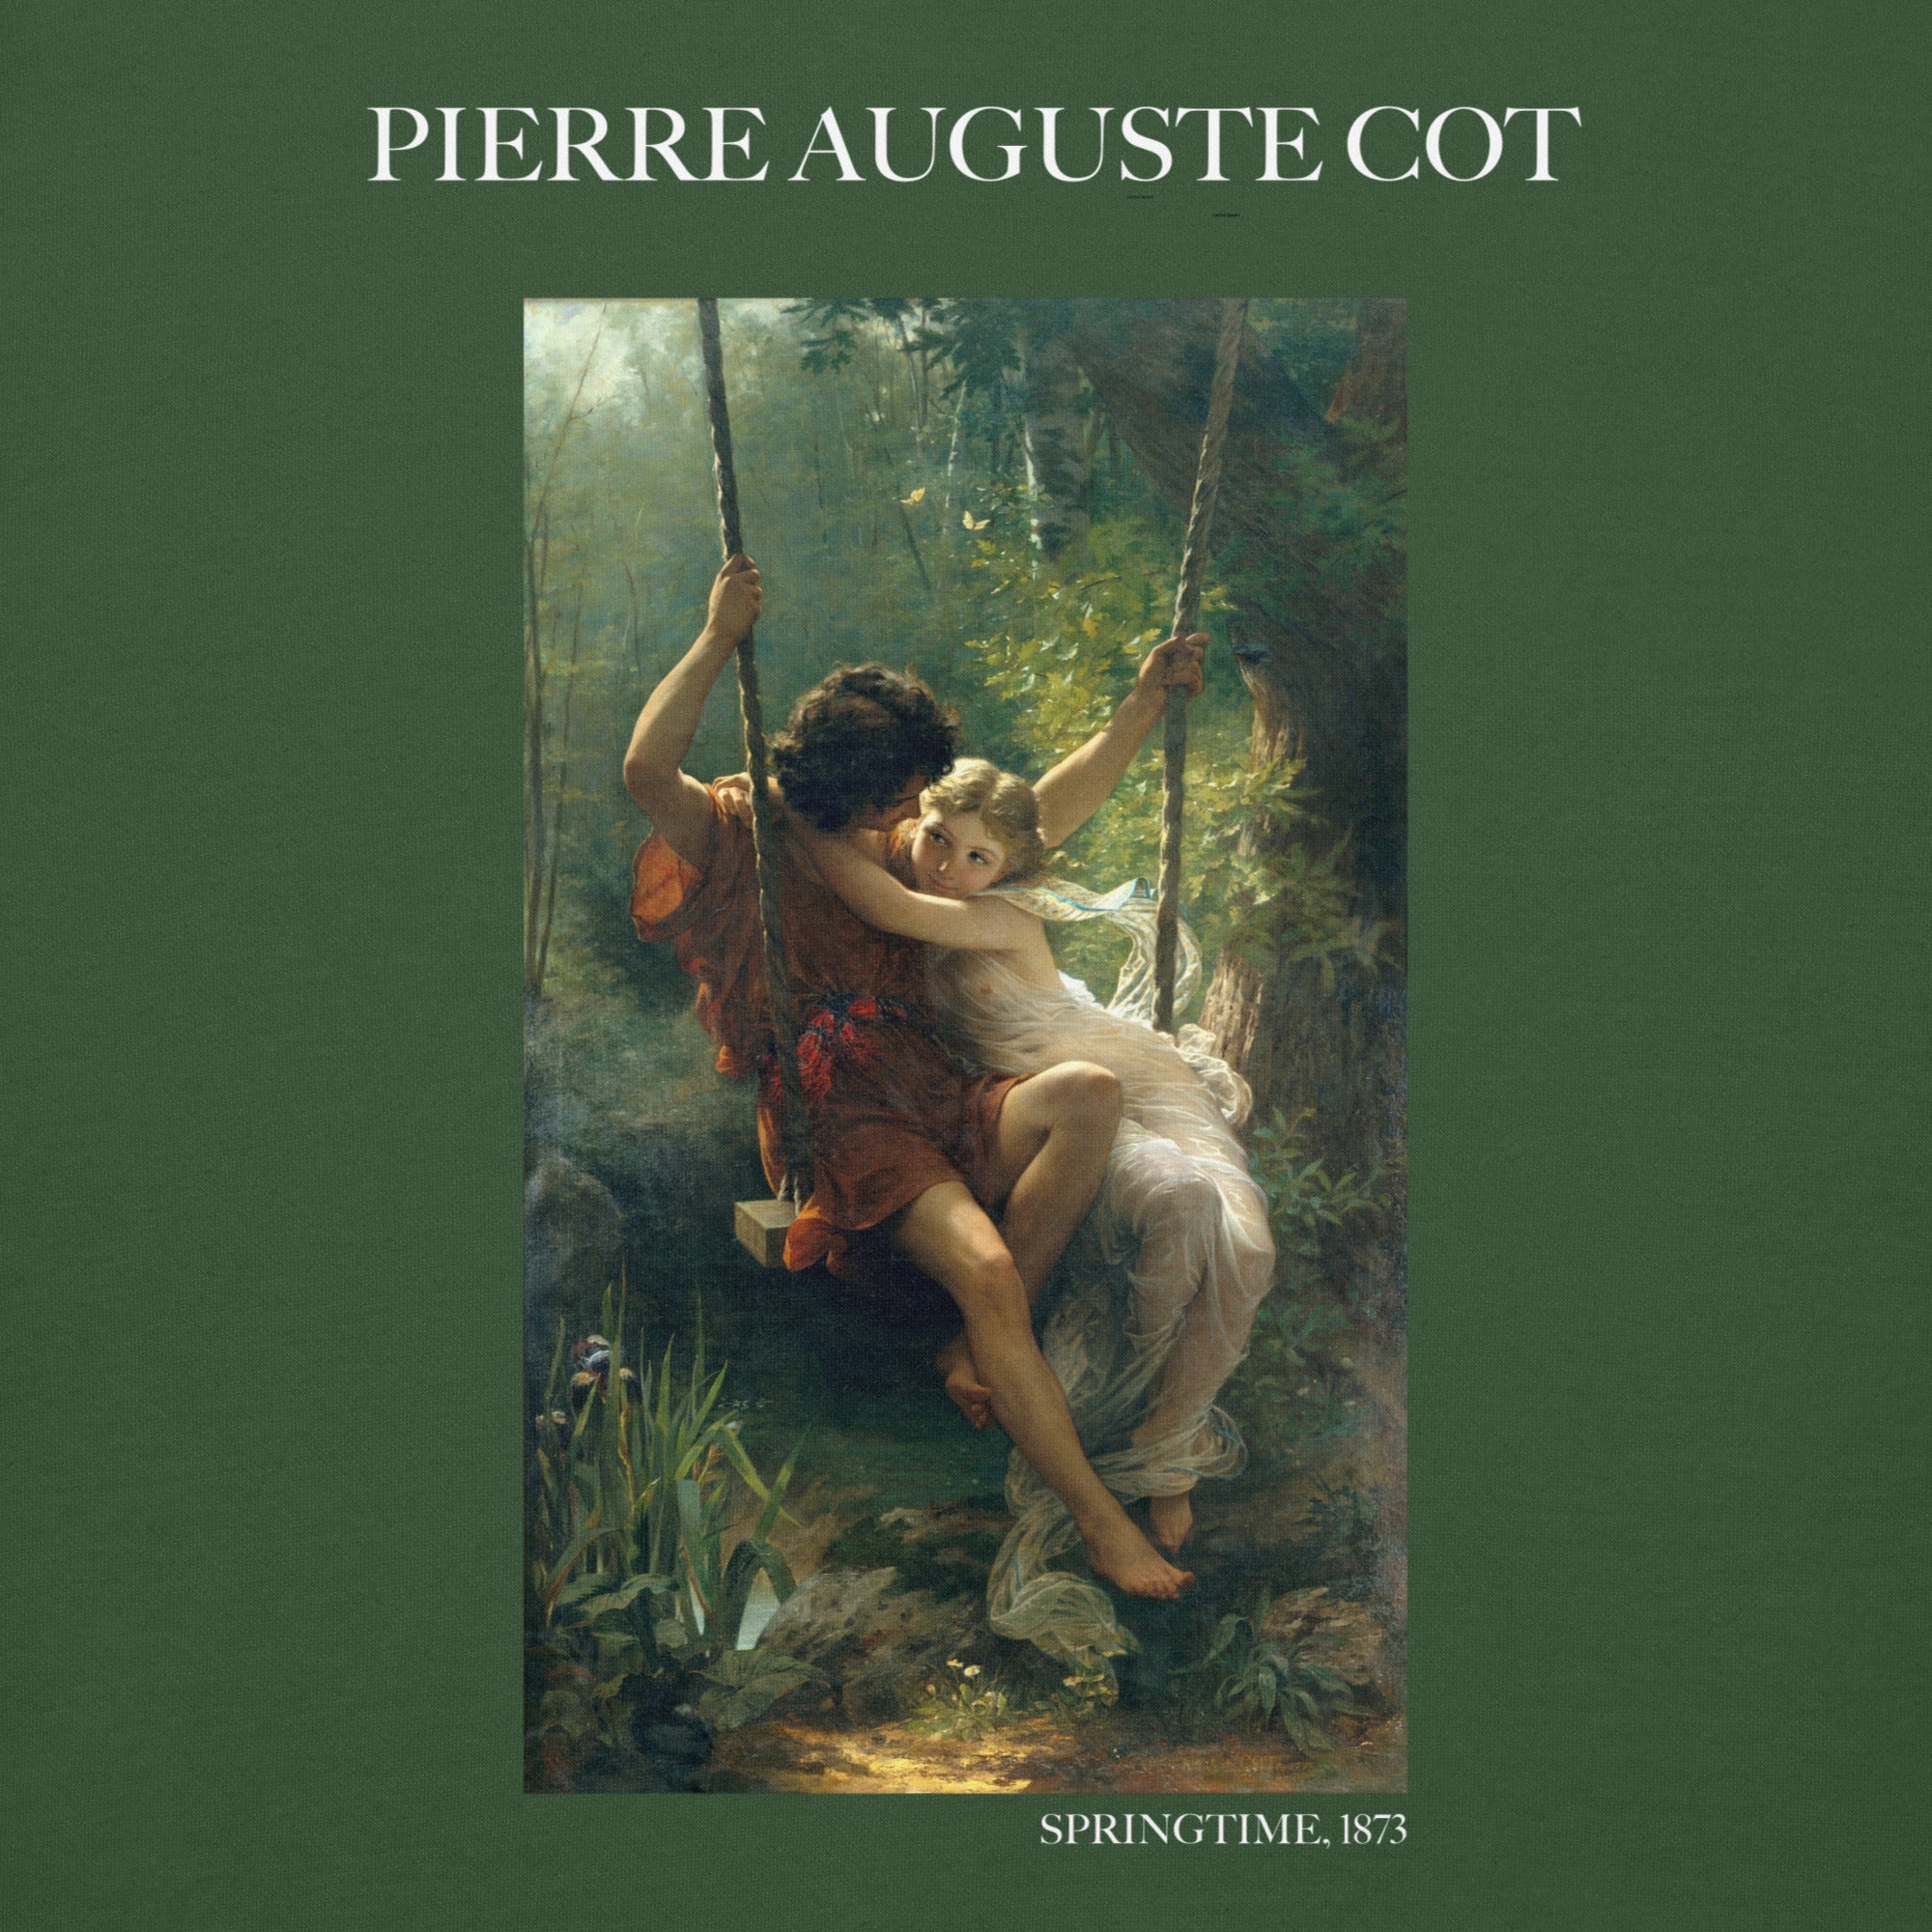 Pierre Auguste Cot 'Springtime' Famous Painting Hoodie | Unisex Premium Art Hoodie